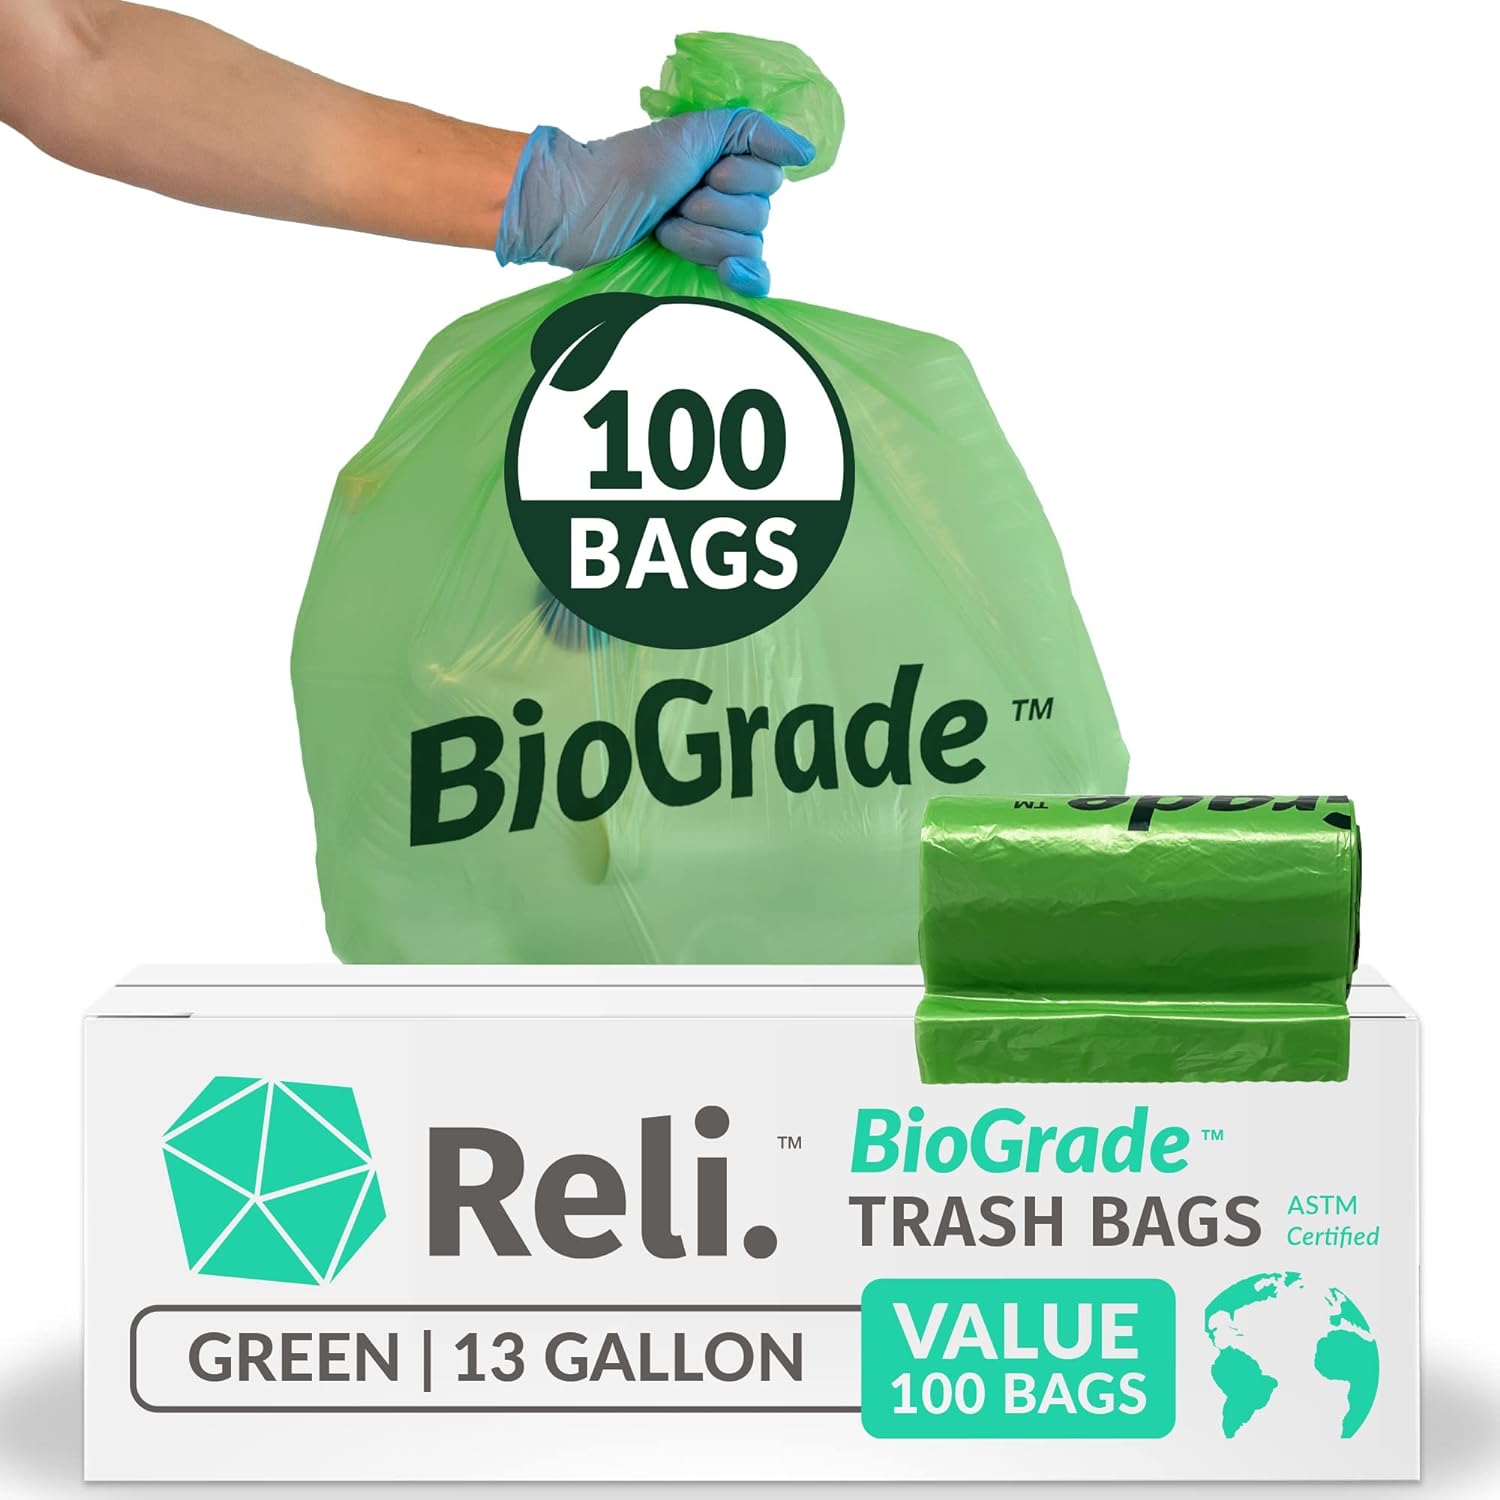 Reli. Biodegradable Trash Bags Review